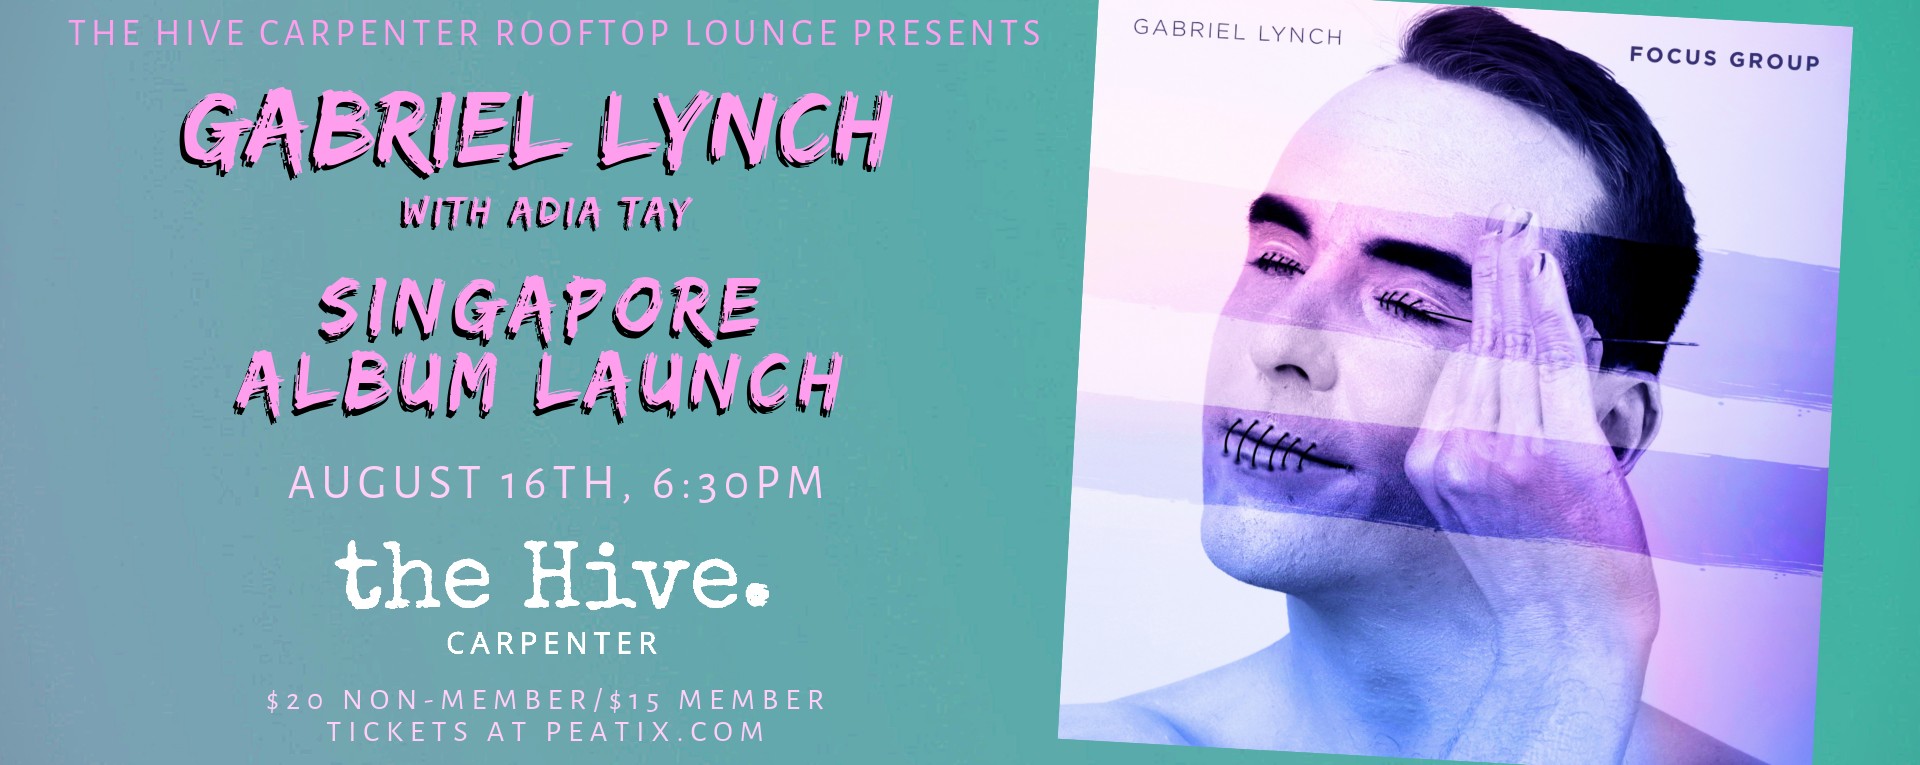 Gabriel Lynch Singapore Album Launch with Adia Tay